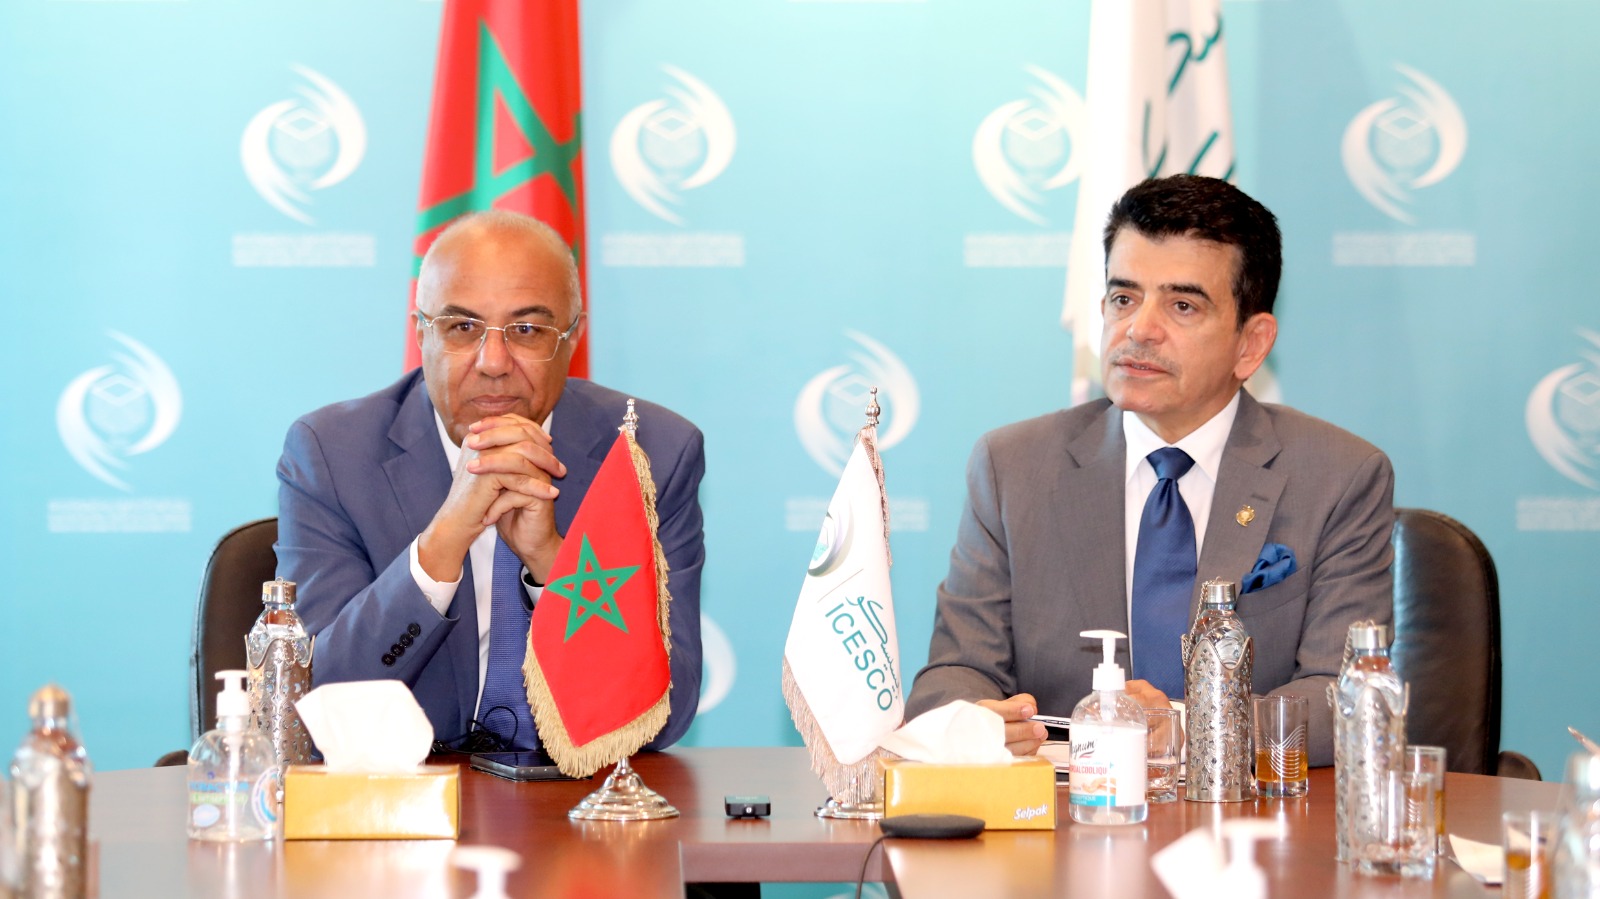 L’ICESCO et le ministère marocain de l’Enseignement supérieur, de la Recherche scientifique et de l’Innovation conviennent de renforcer la coopération